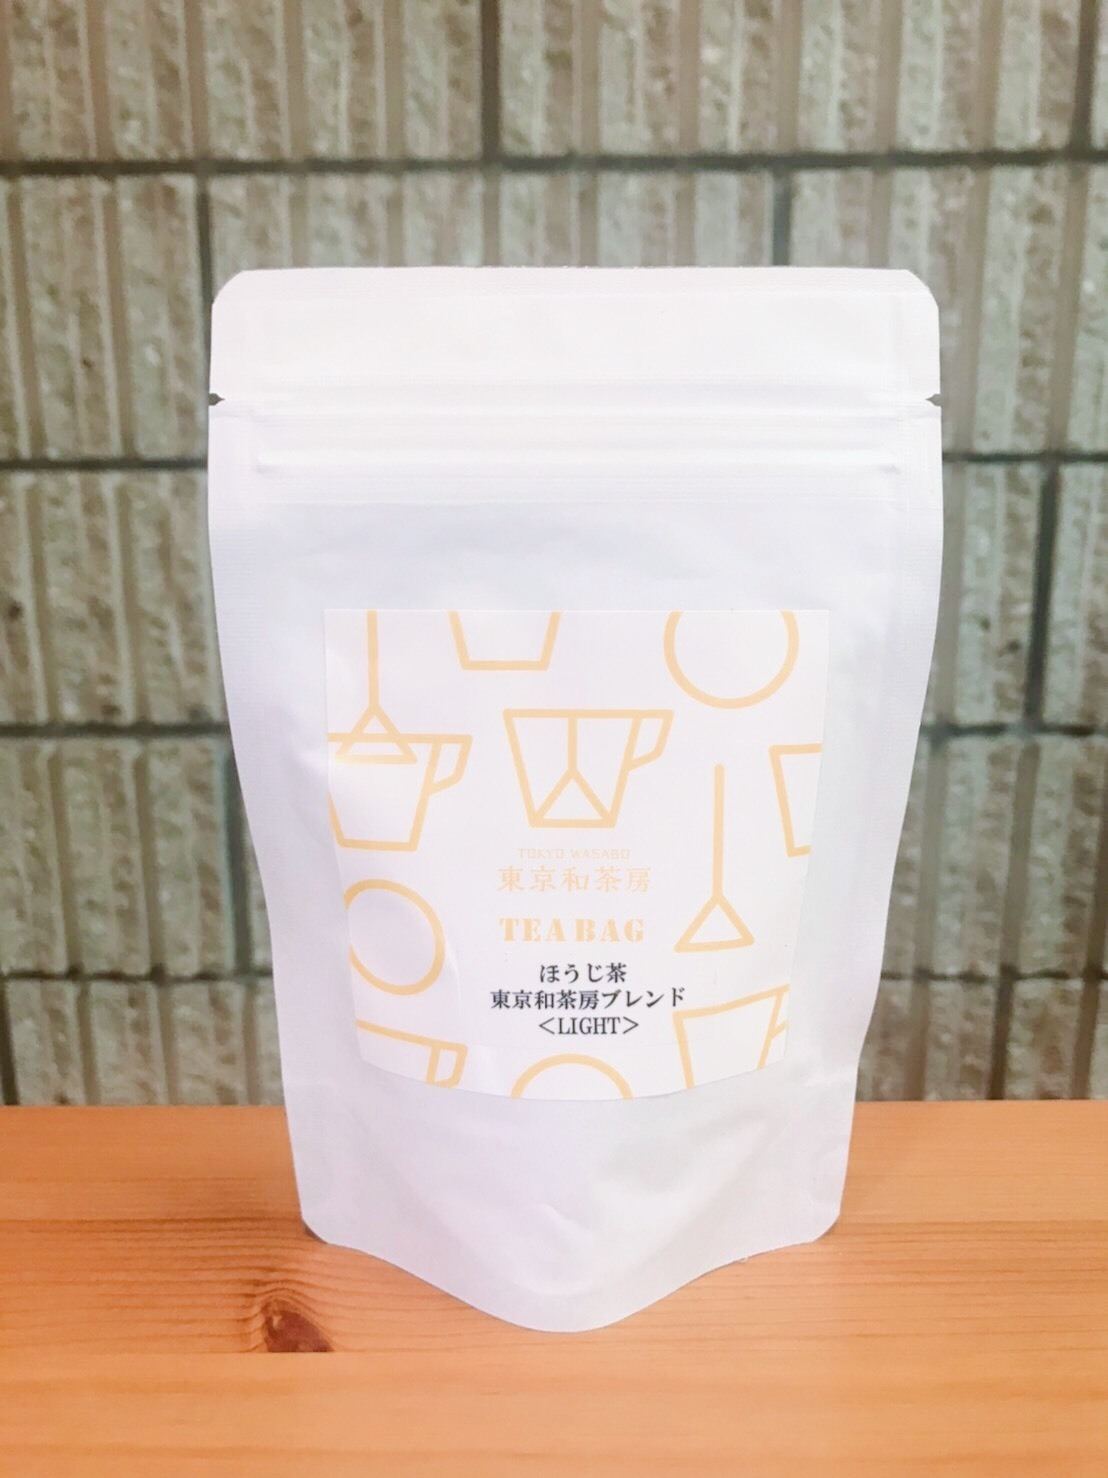 「東京和茶房ブレンド ほうじ茶〈LIGHT ROAST〉」ティーバッグ5個 540円